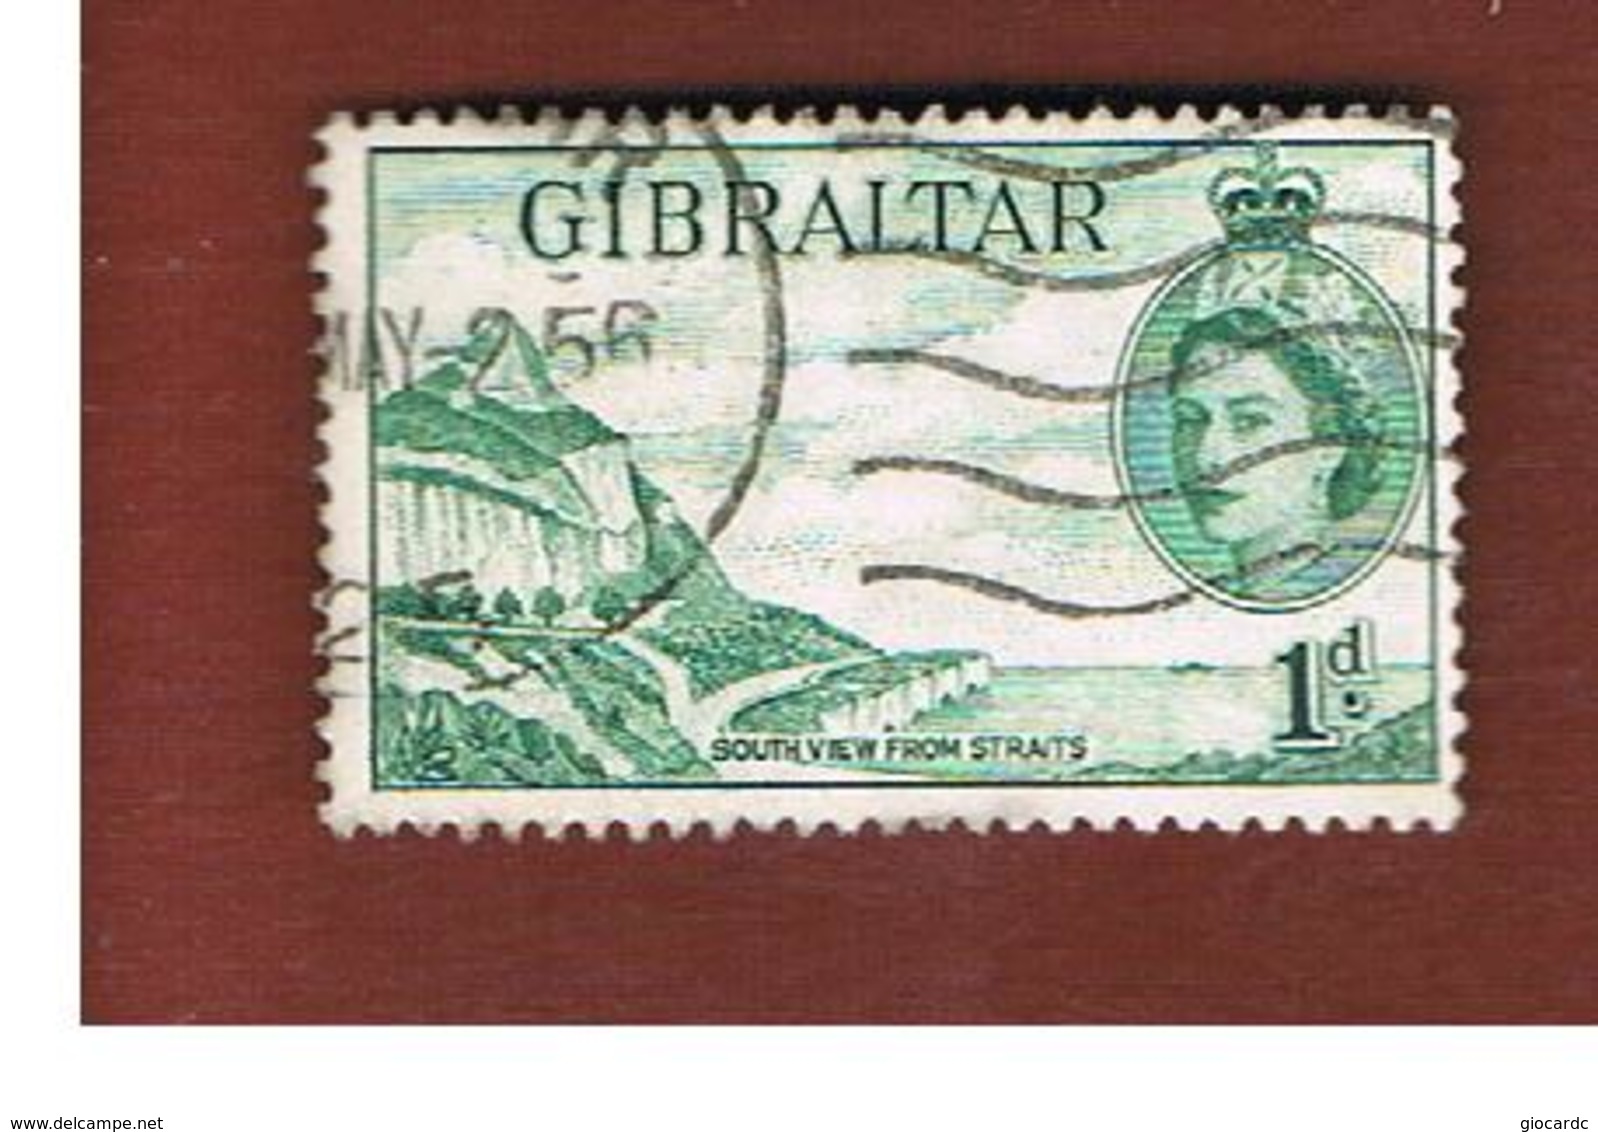 GIBILTERRA (GIBRALTAR)   - SG 146 - 1953 SOUTH VIEW   -    USED - Gibilterra